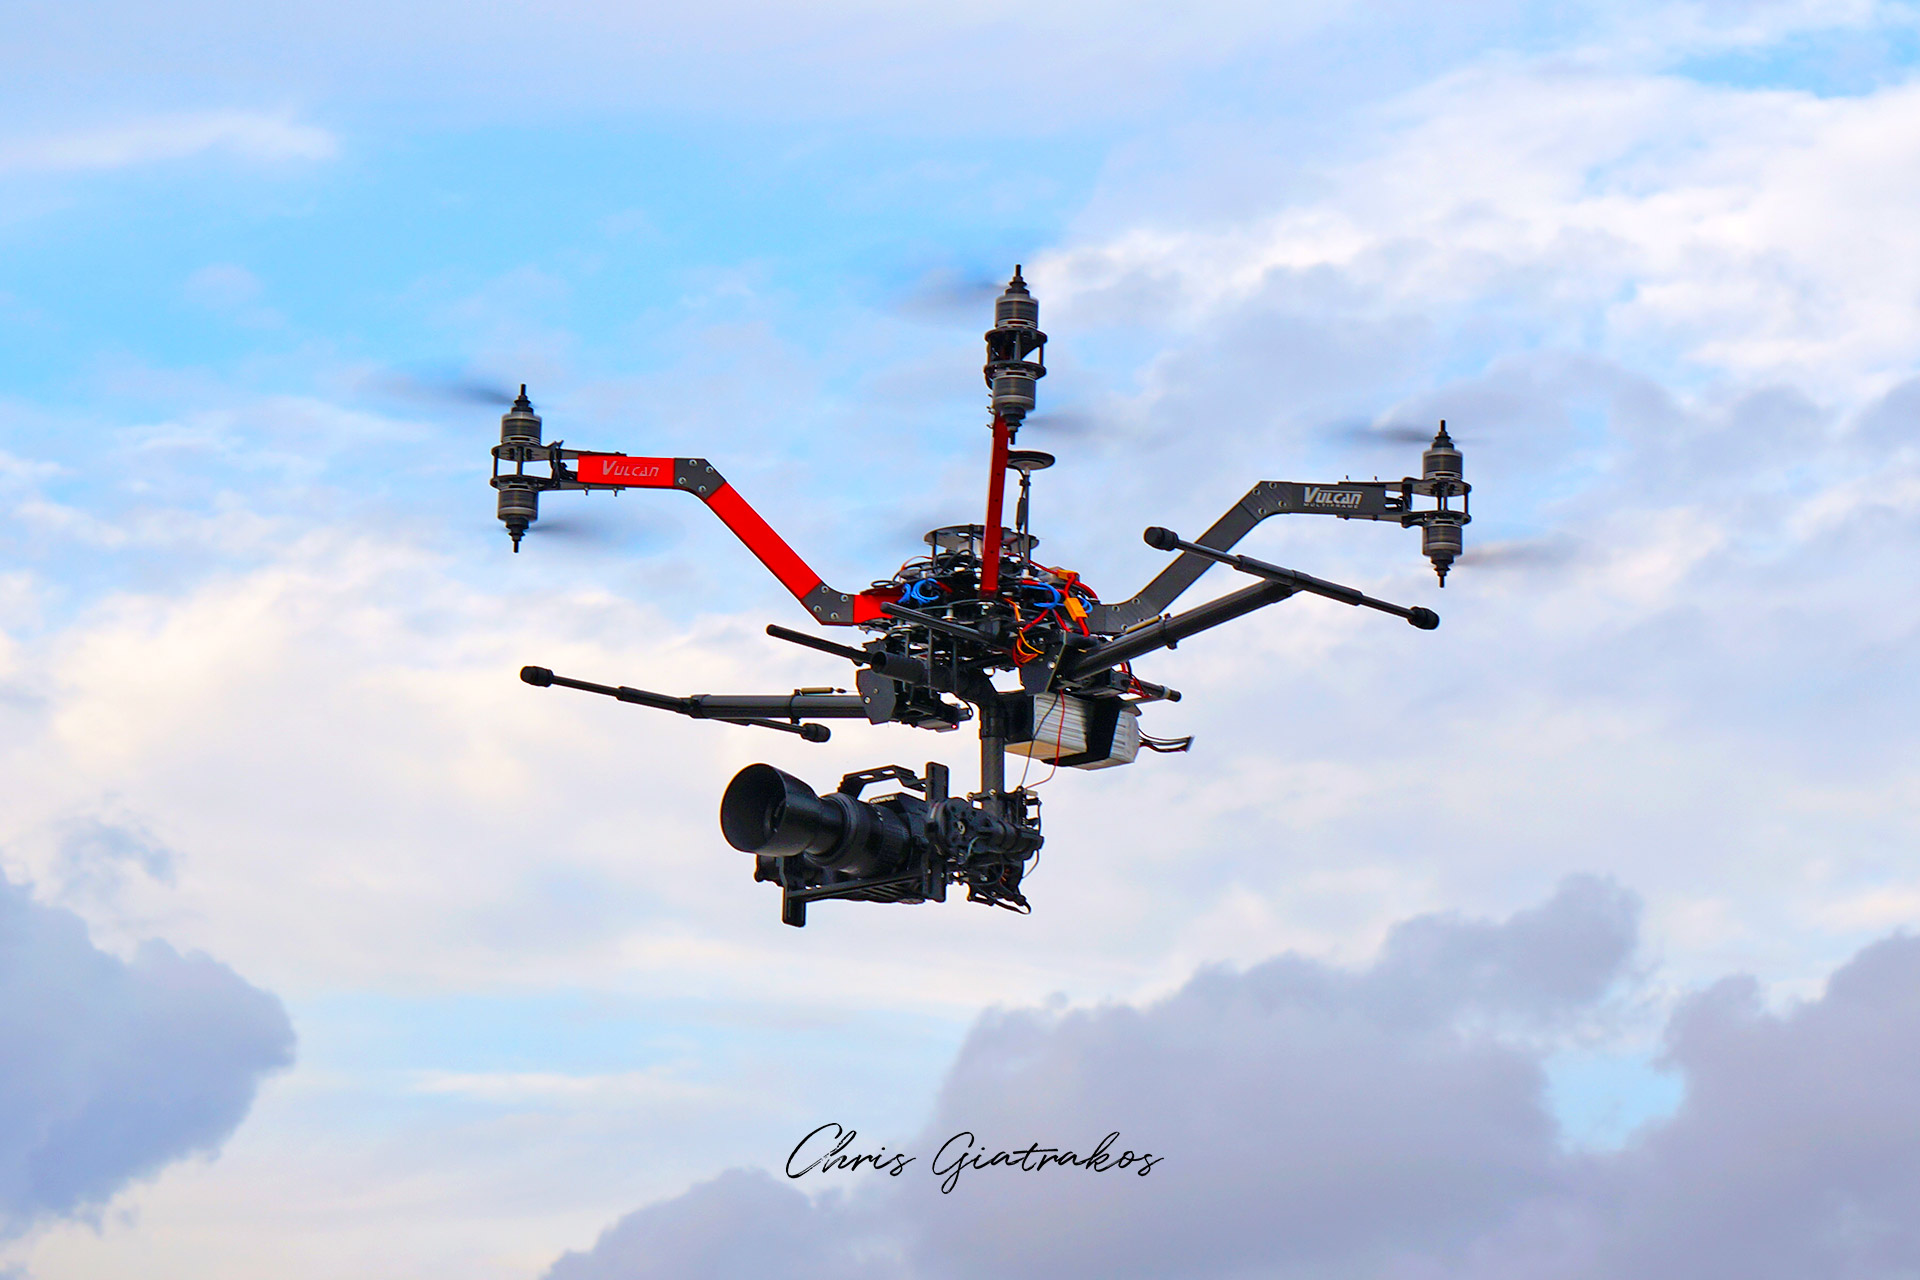 Rent a drone Pilot Greece, Chris Giatrakos